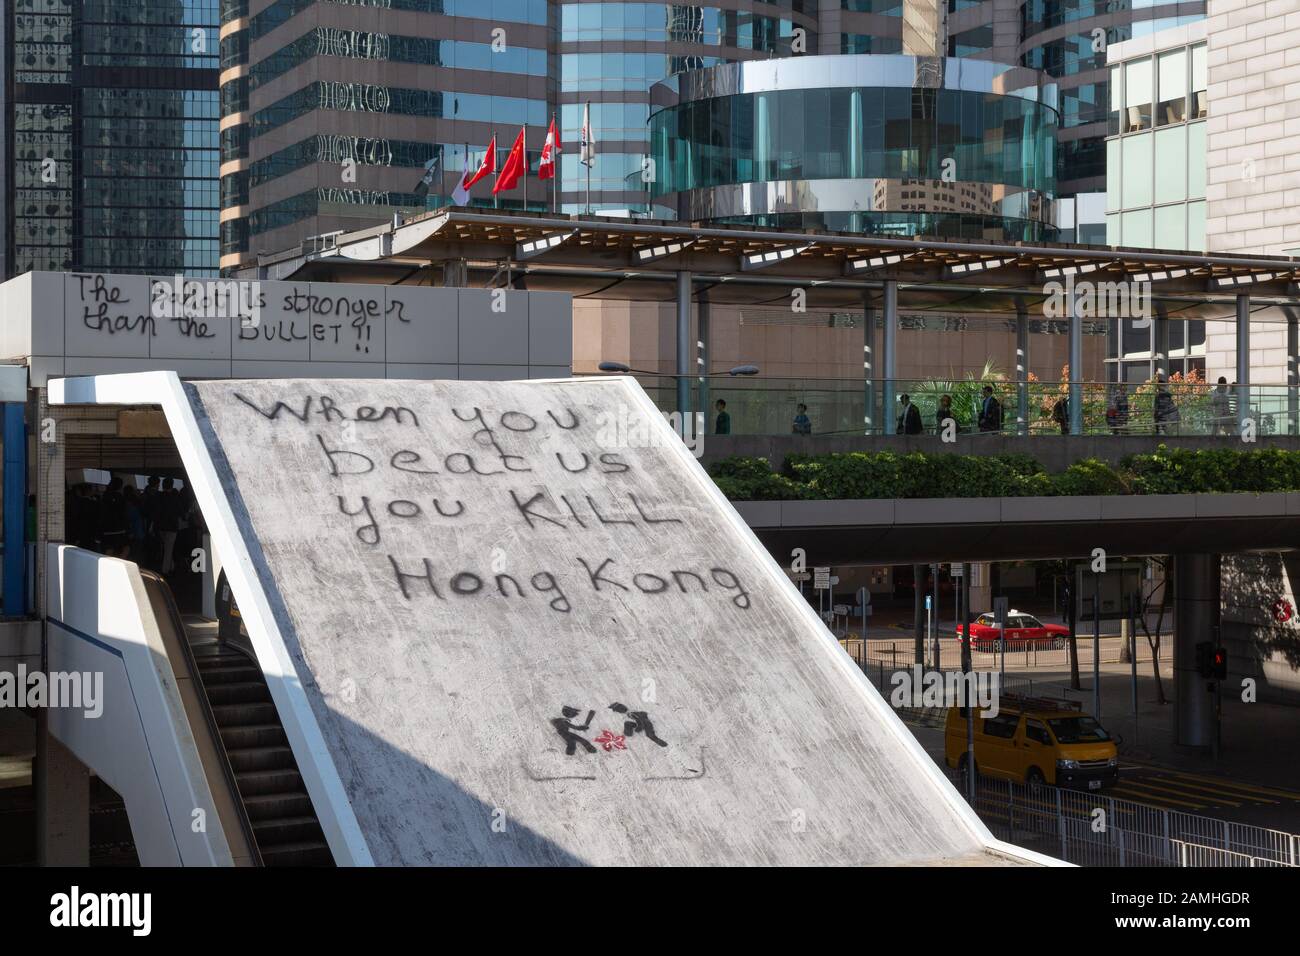 Hong Kong protest 2019; graffiti on Hong Kong Island as a result of the Hong Kong protests and civil disruption, Hong Kong Asia Stock Photo